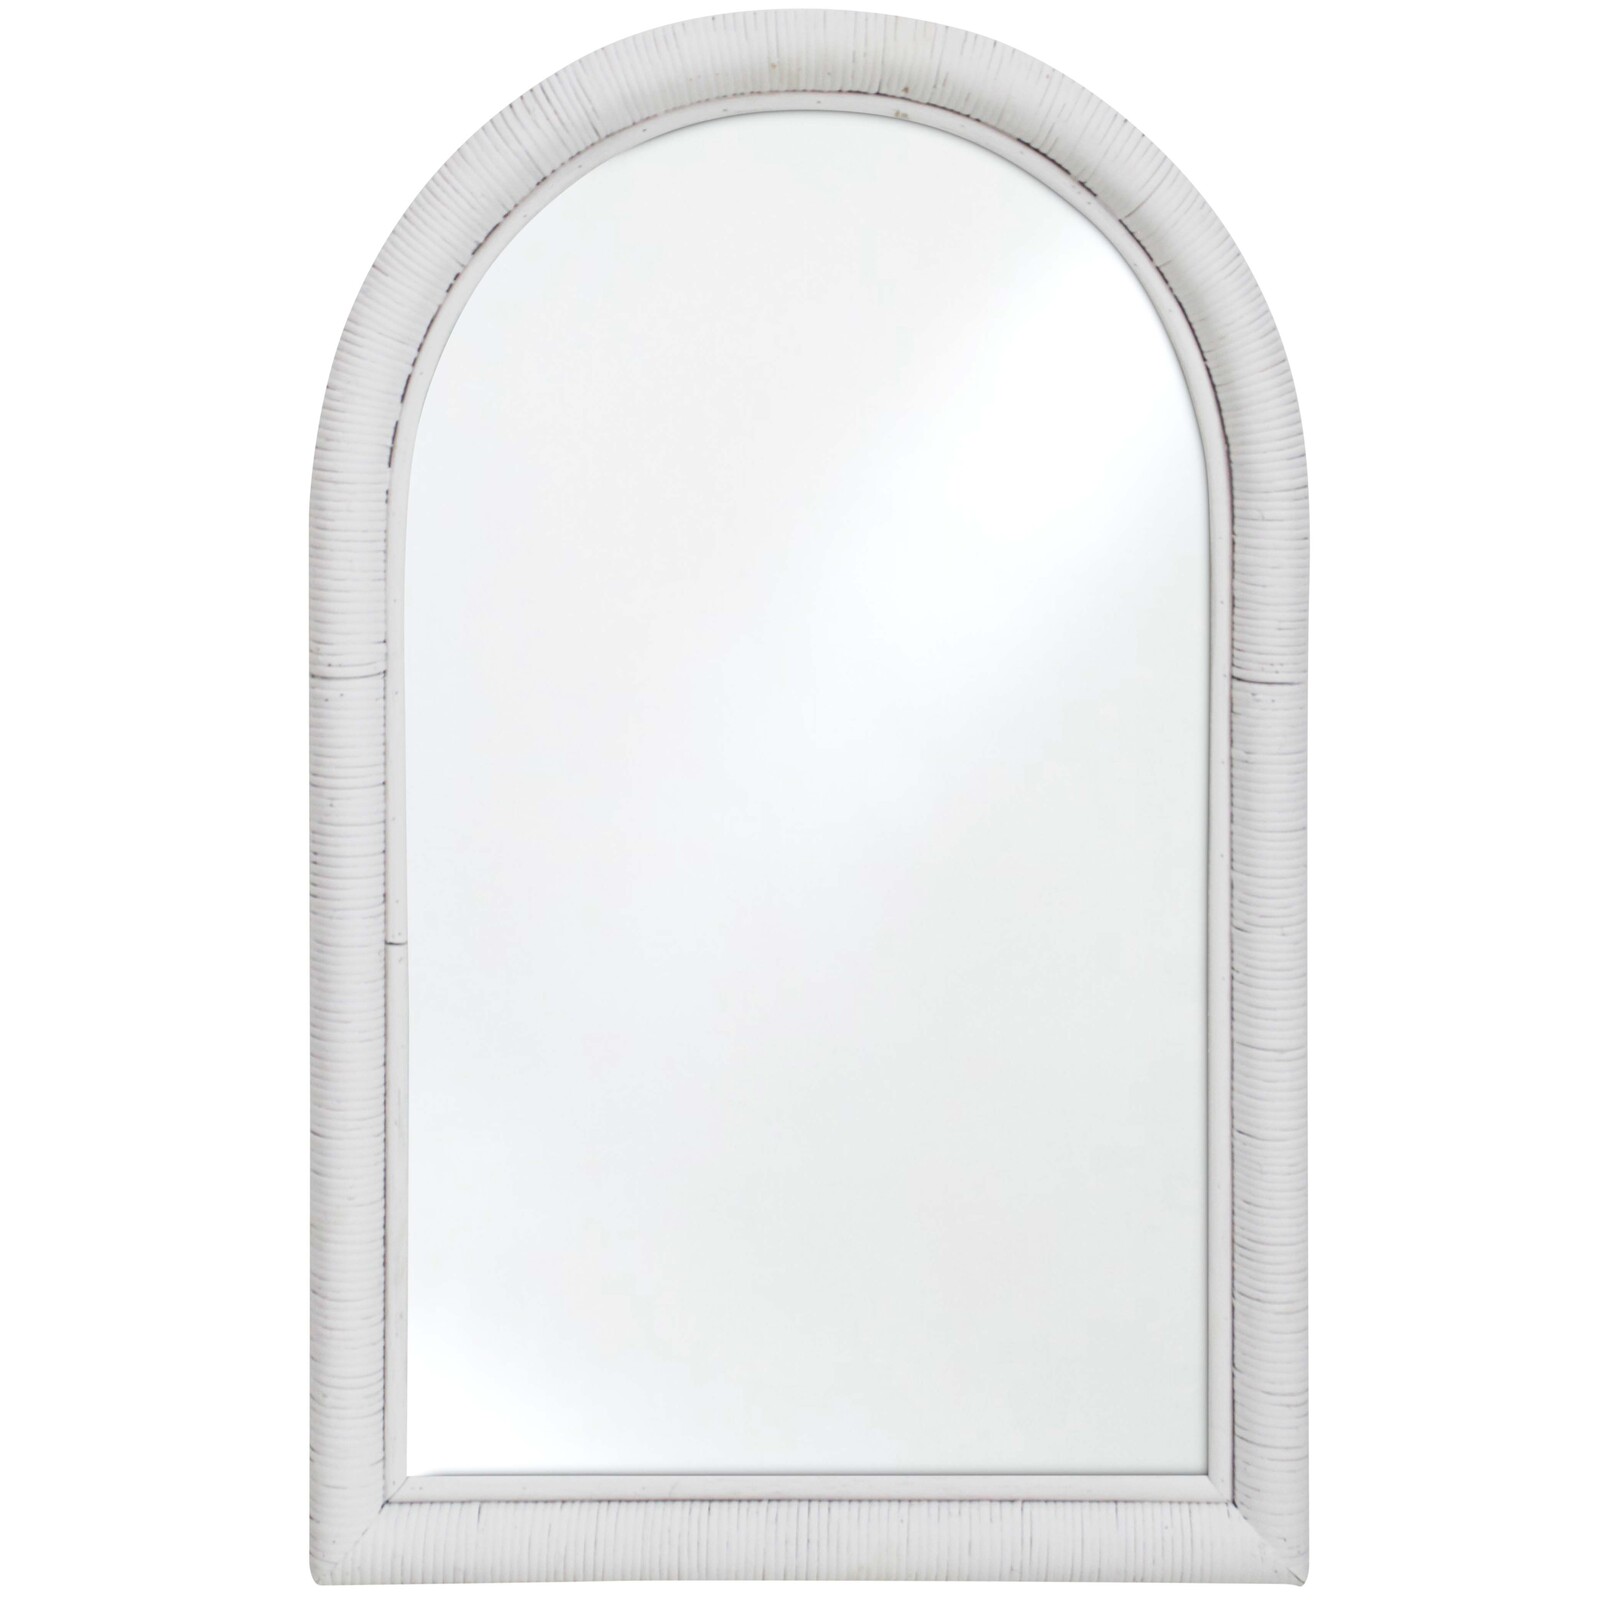 Mirror Wrap Arch 90cm White